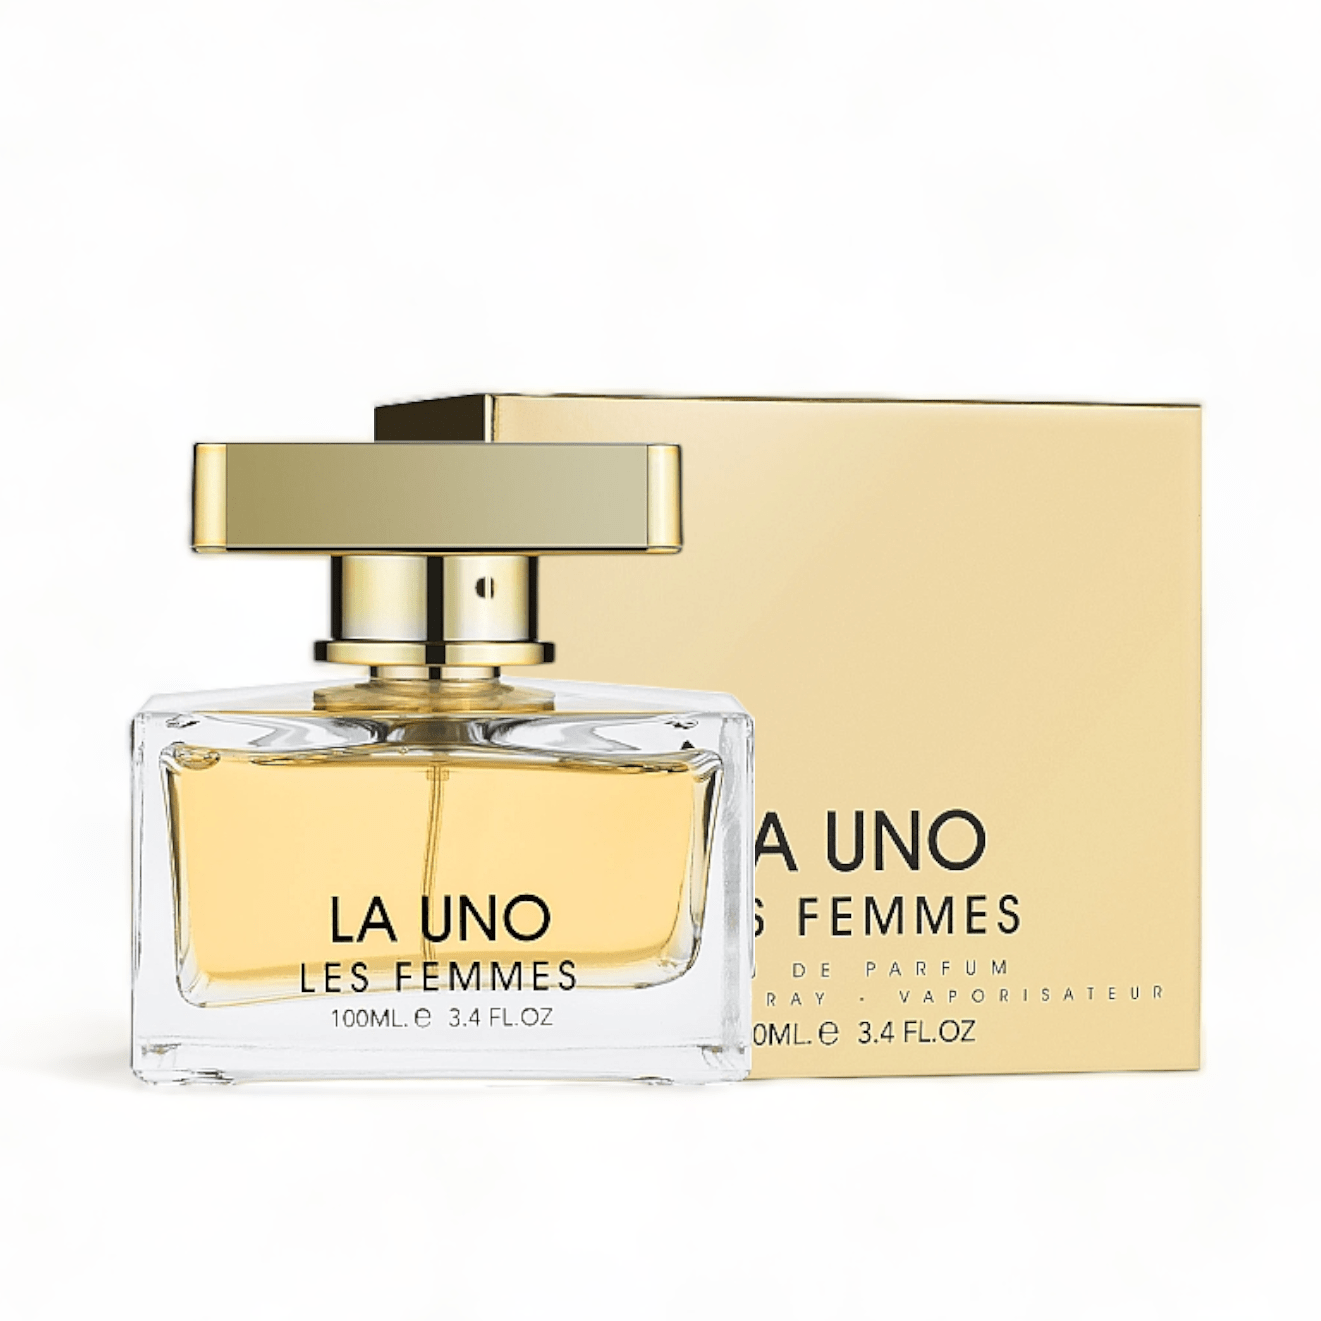 La Uno Les Femmes Eau De Parfum 100Ml By Fragrance World